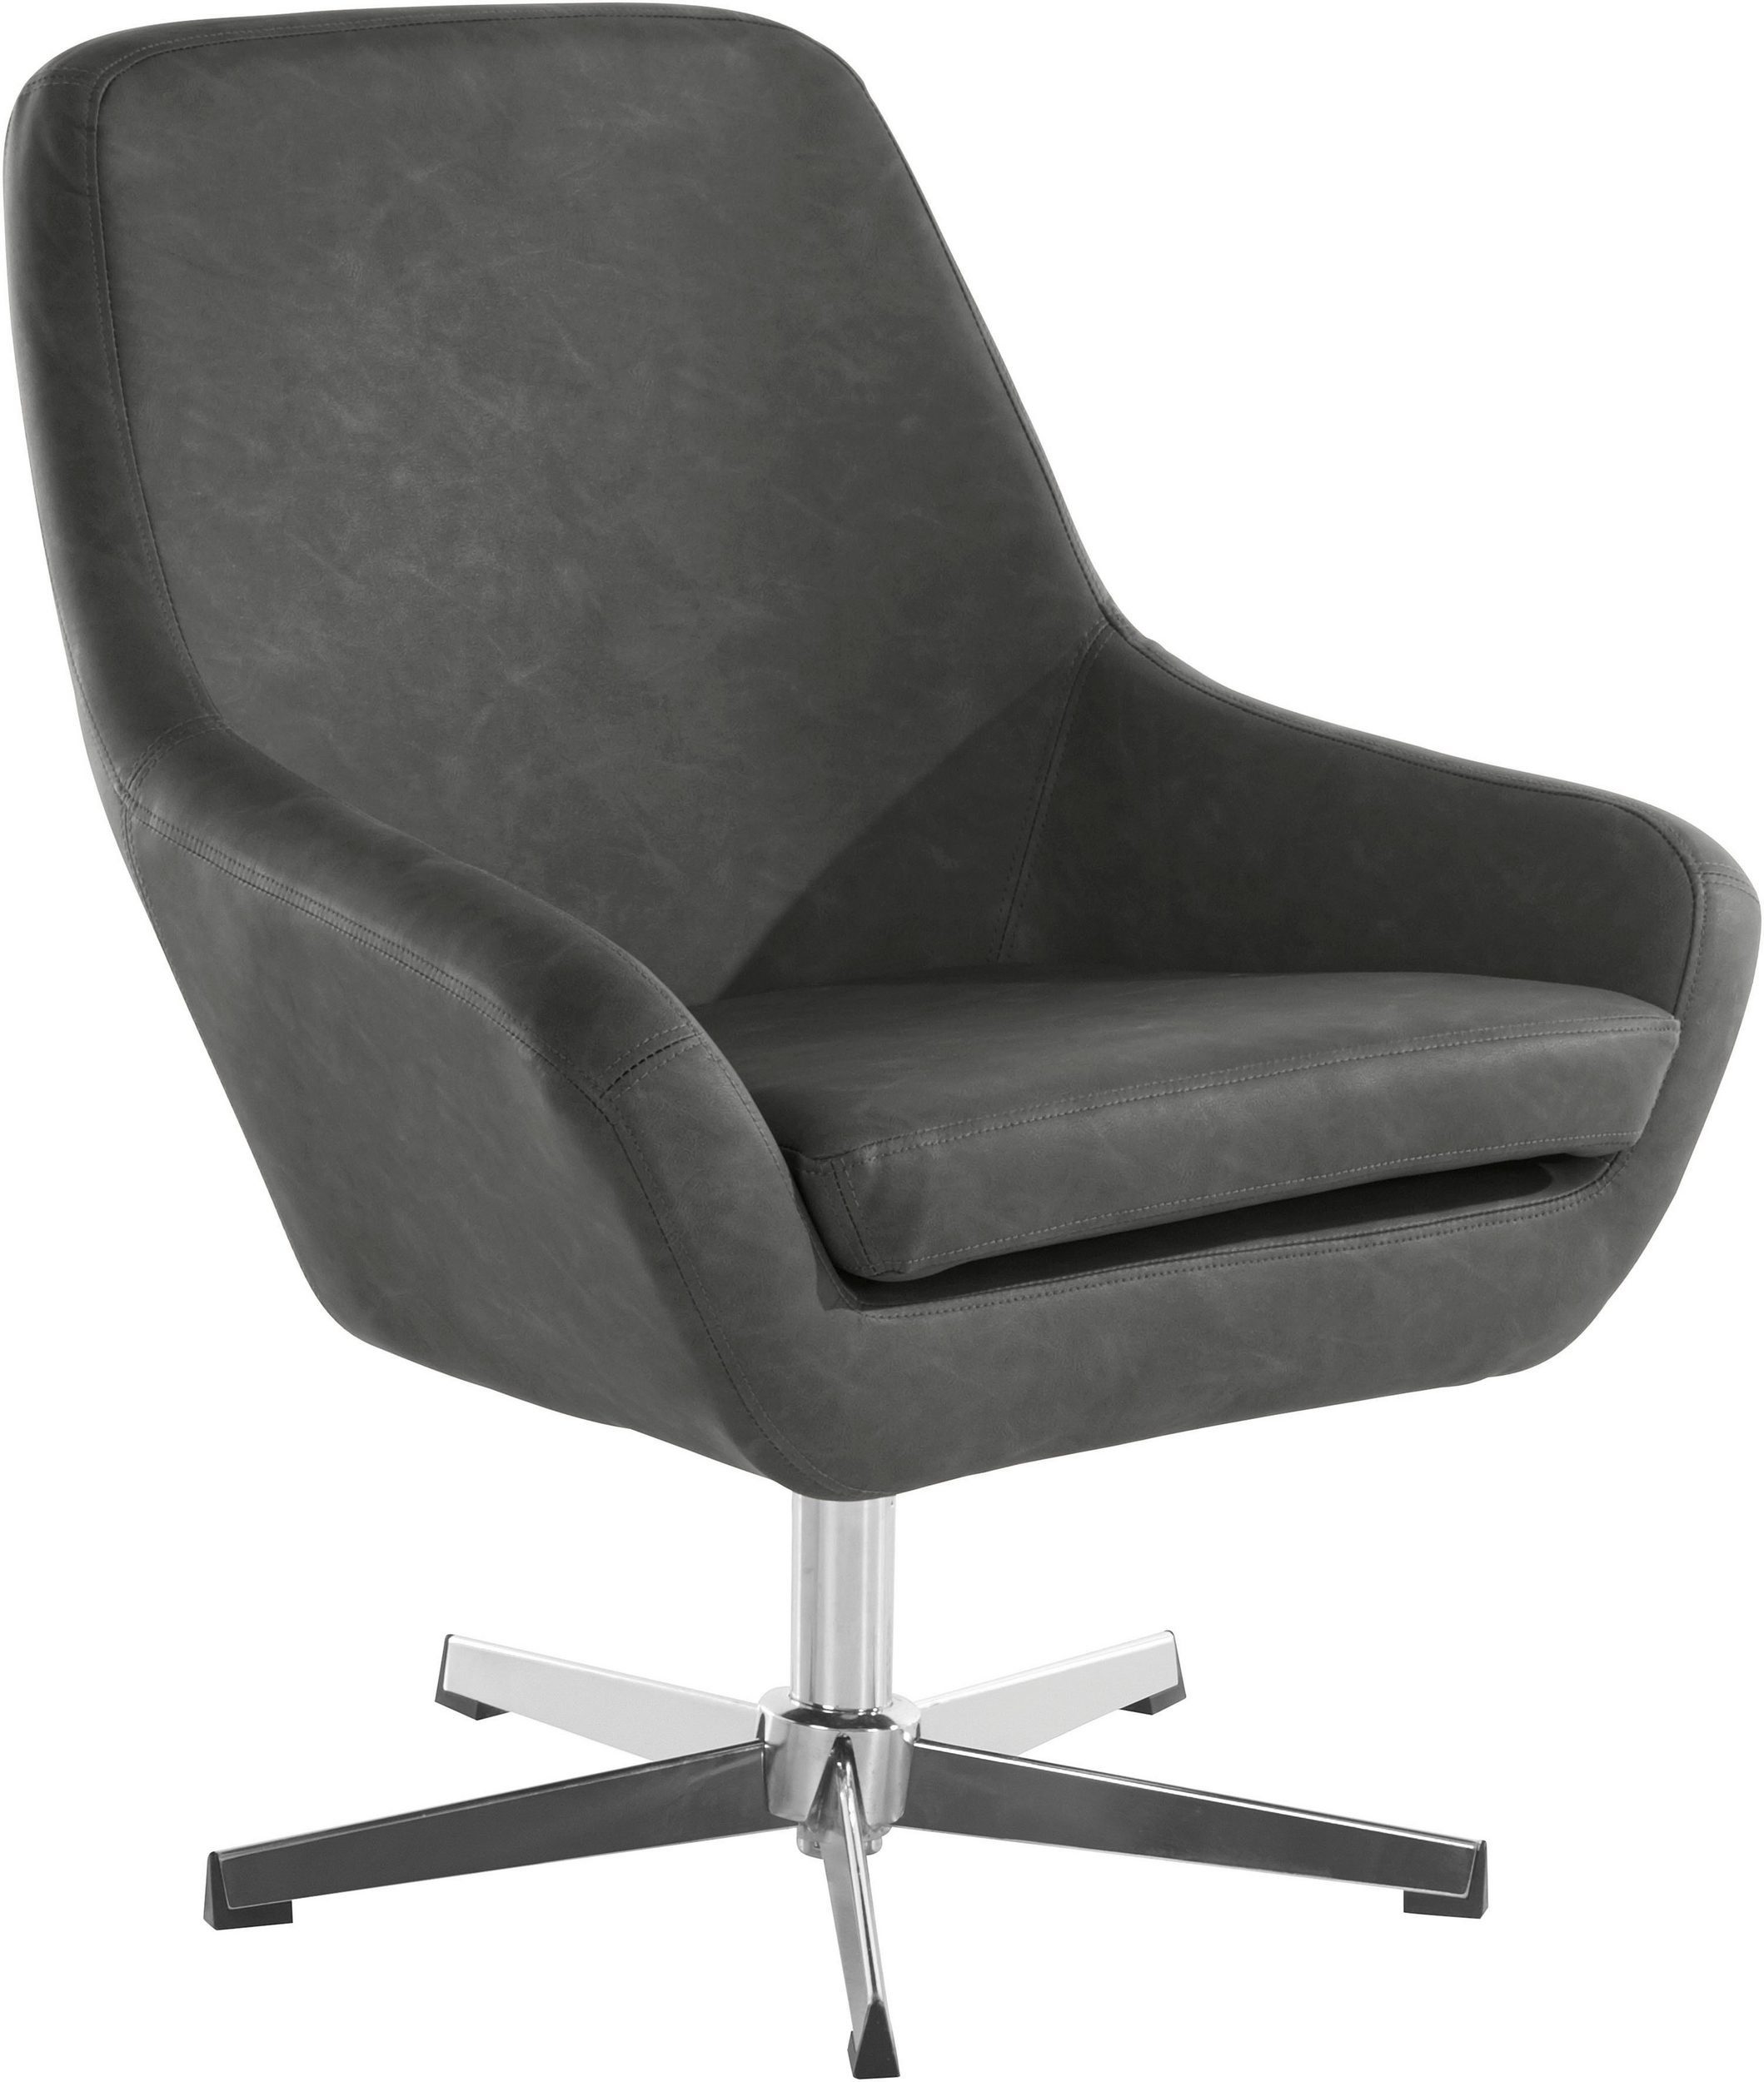 45 cm Sitzhöhe Loungesessel Lederoptik, Tessa, Bezug grau Metall Chromgestell, in loft24